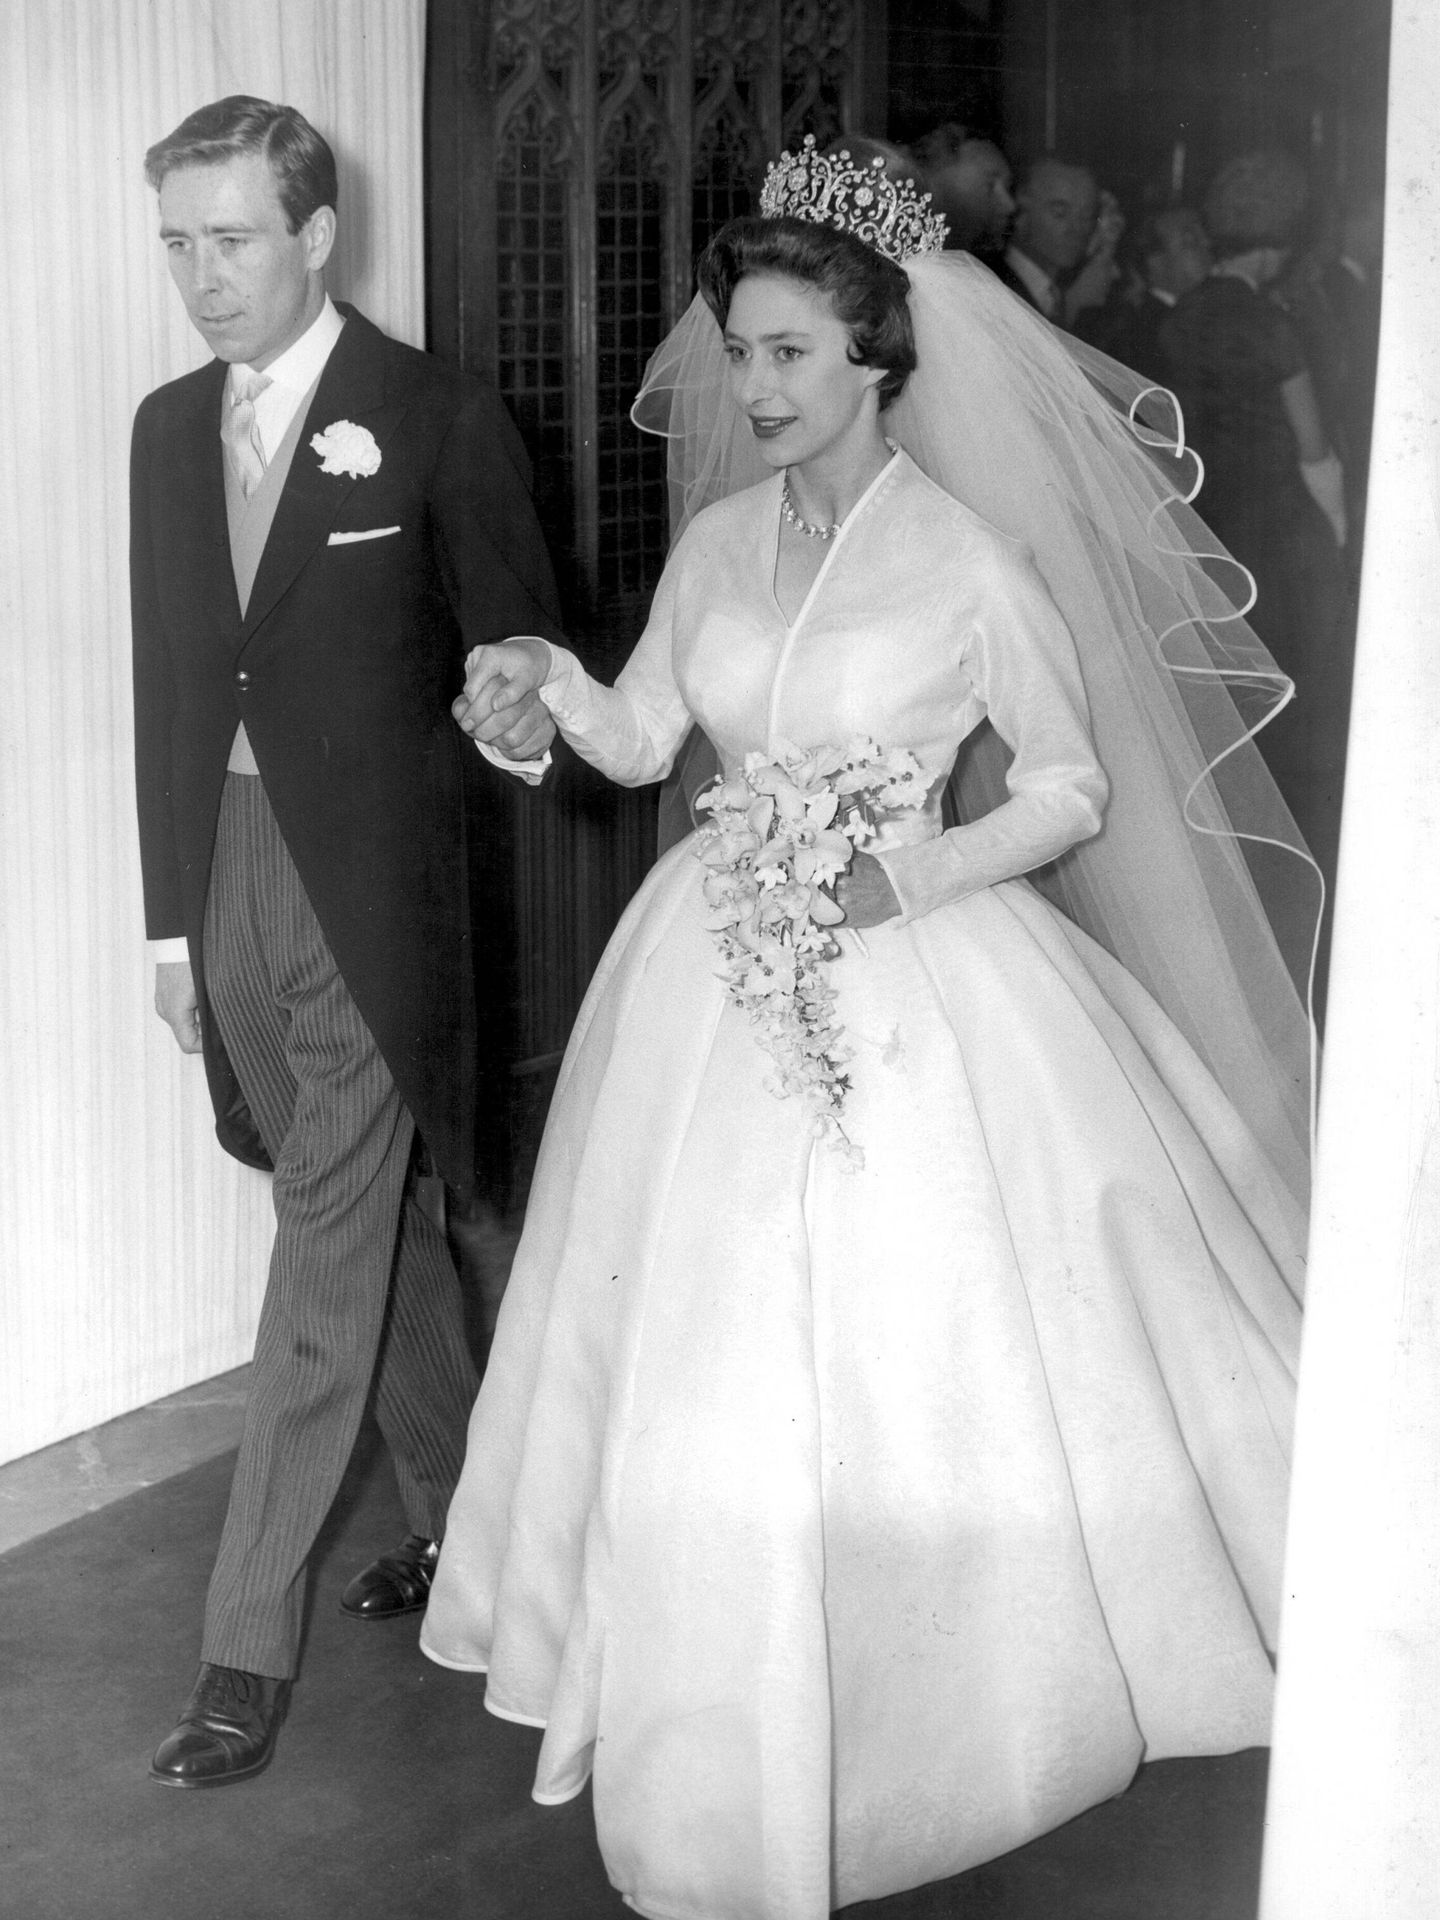 La boda de la princesa Margarita y Anthony Armstrong-Jones. (Cordon Press)